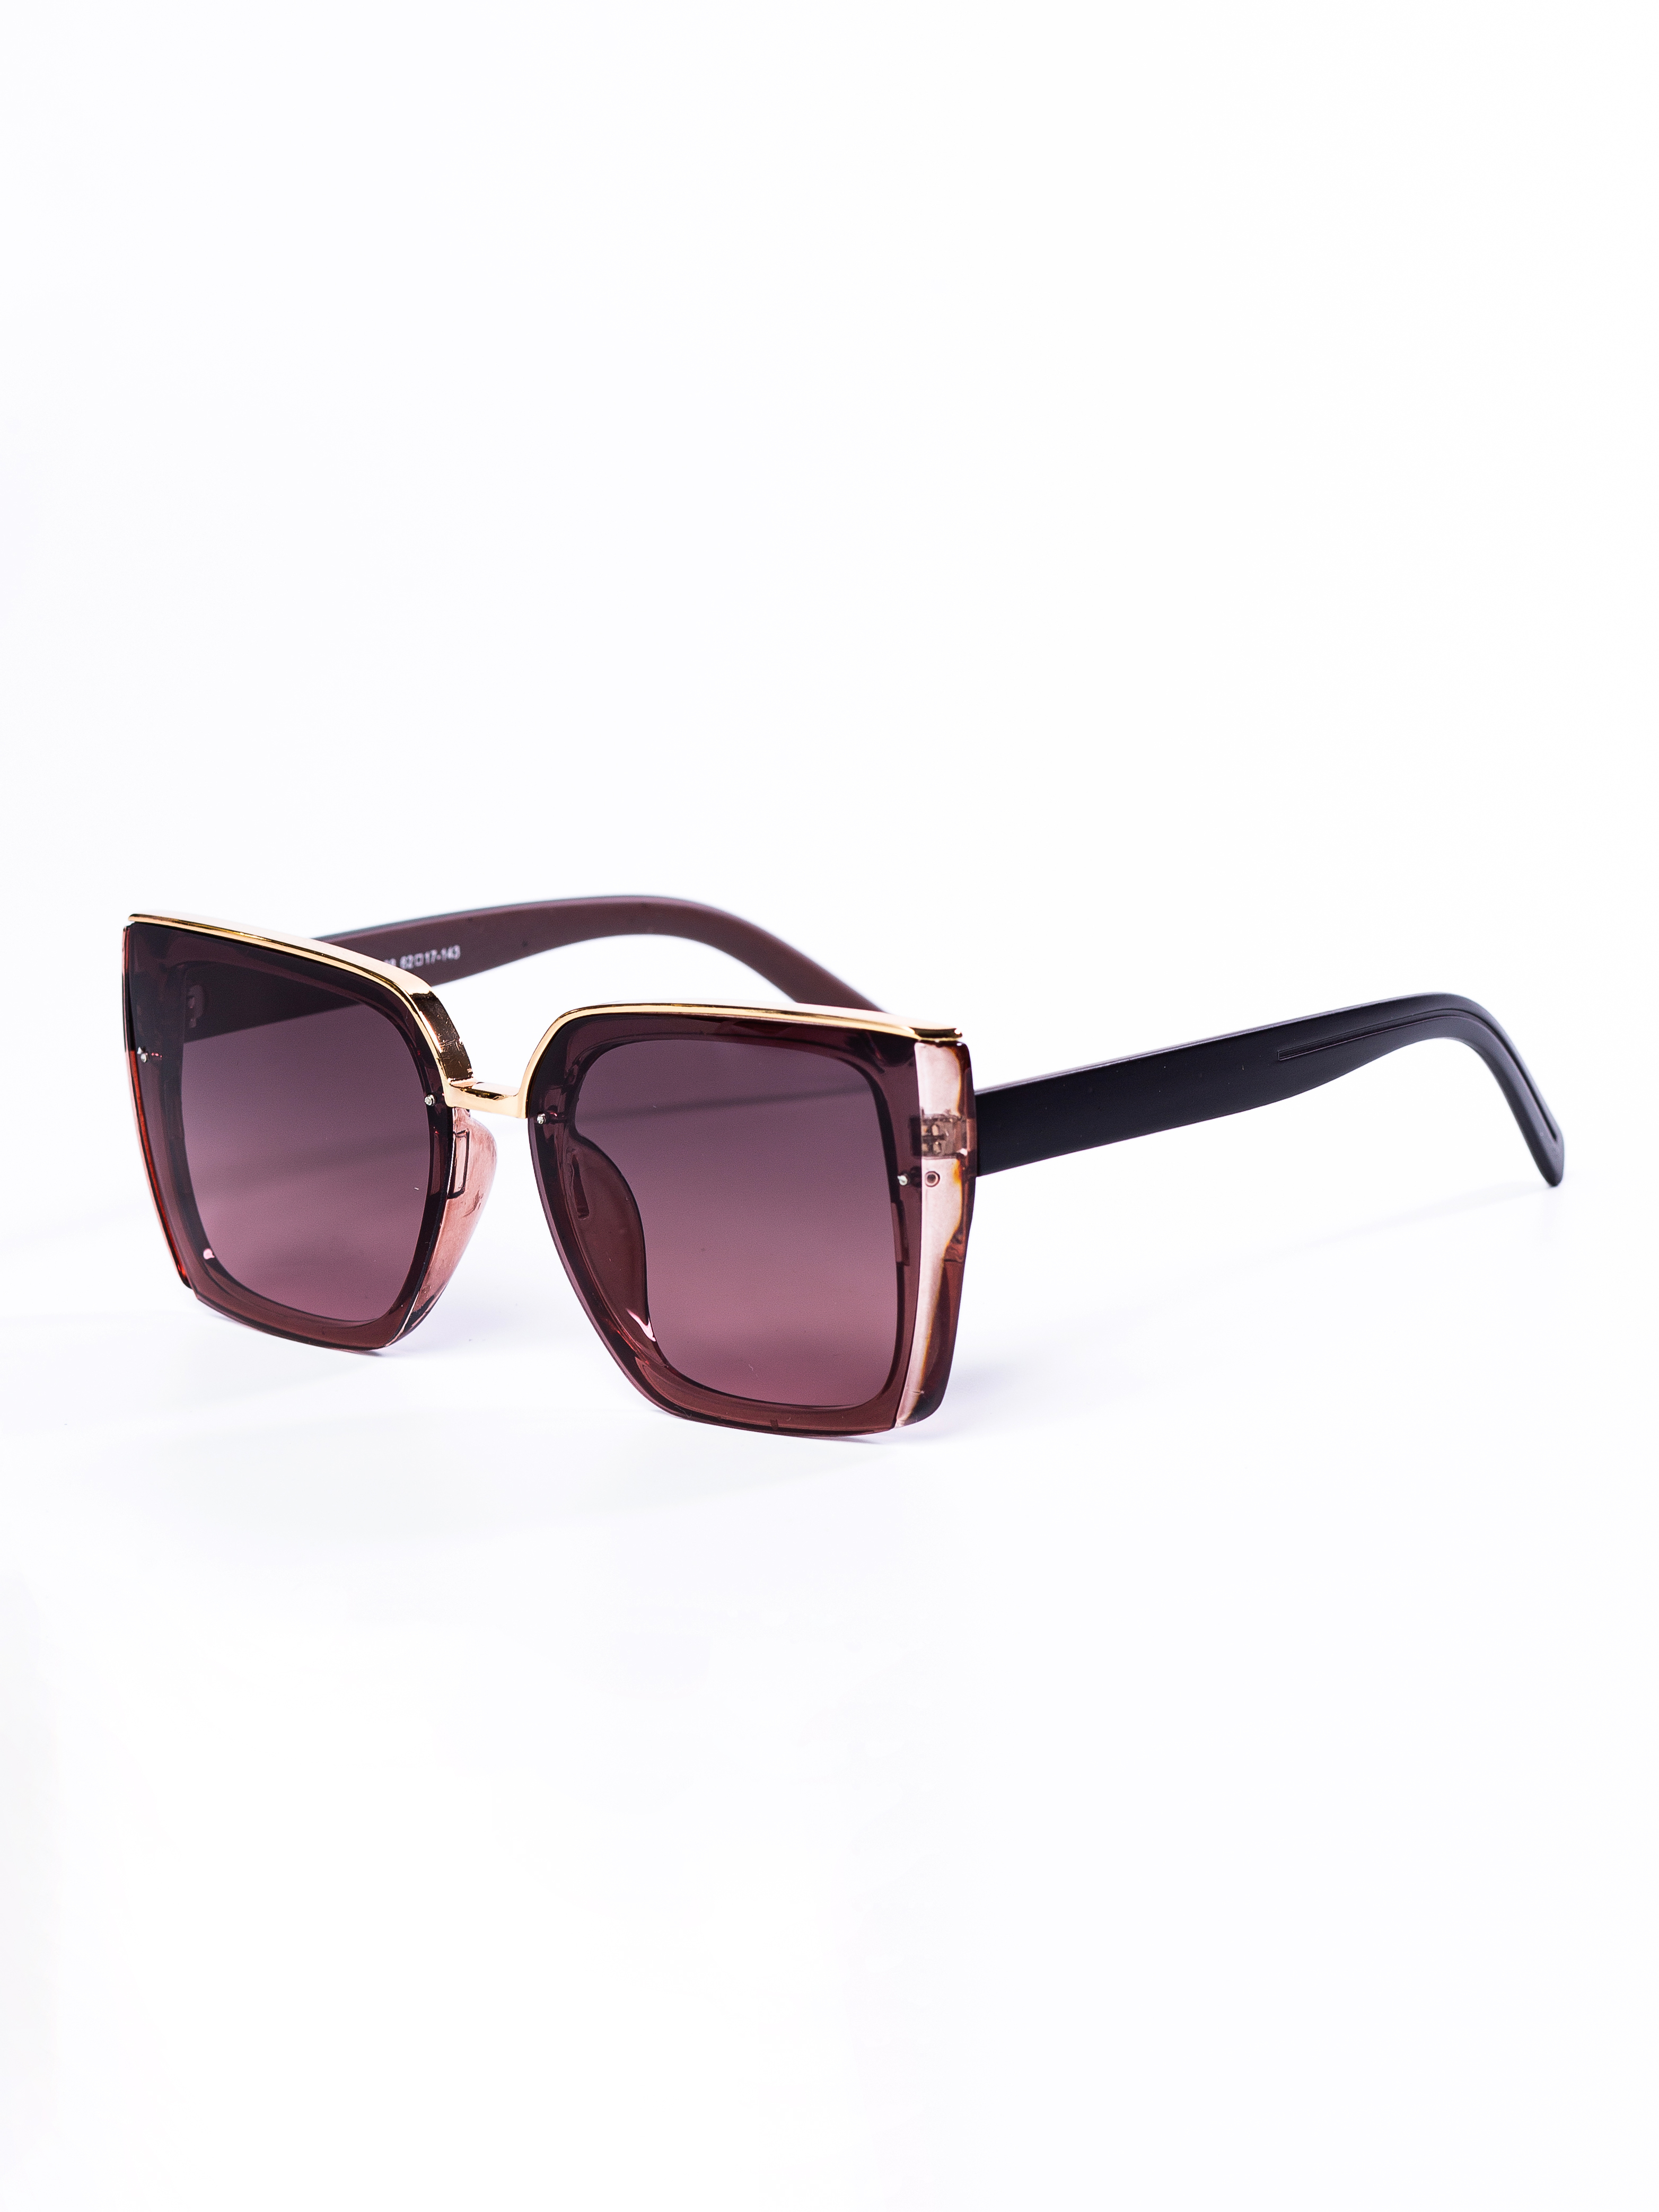 Солнцезащитные очки женские ezstore 1318 коричневые